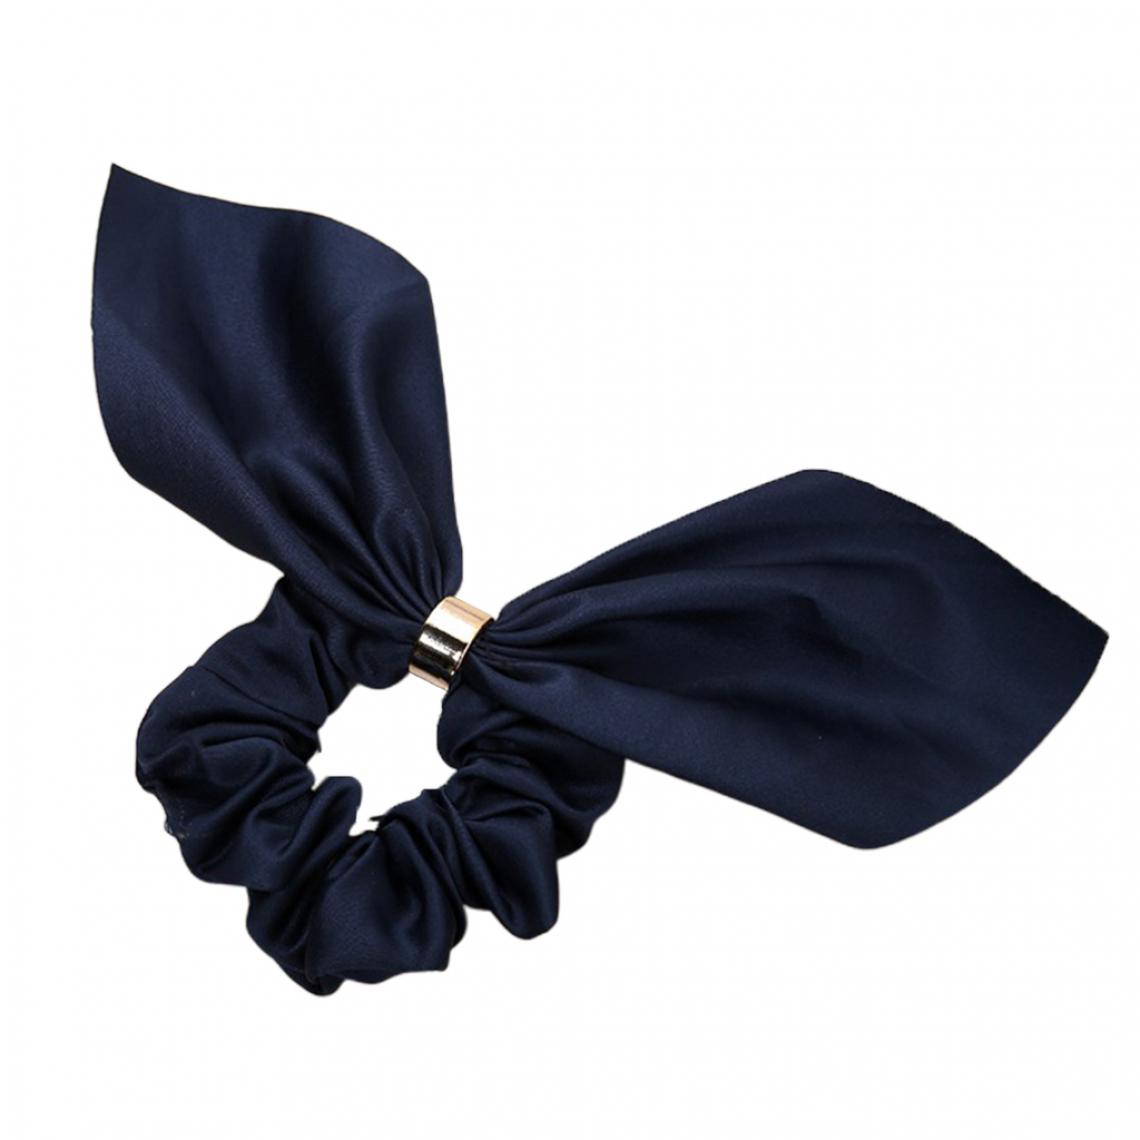 marque generique - Femmes Filles Bowknot Cheveux Chouchous Élastiques Cravates Bandes Accessoires Noir - Perles